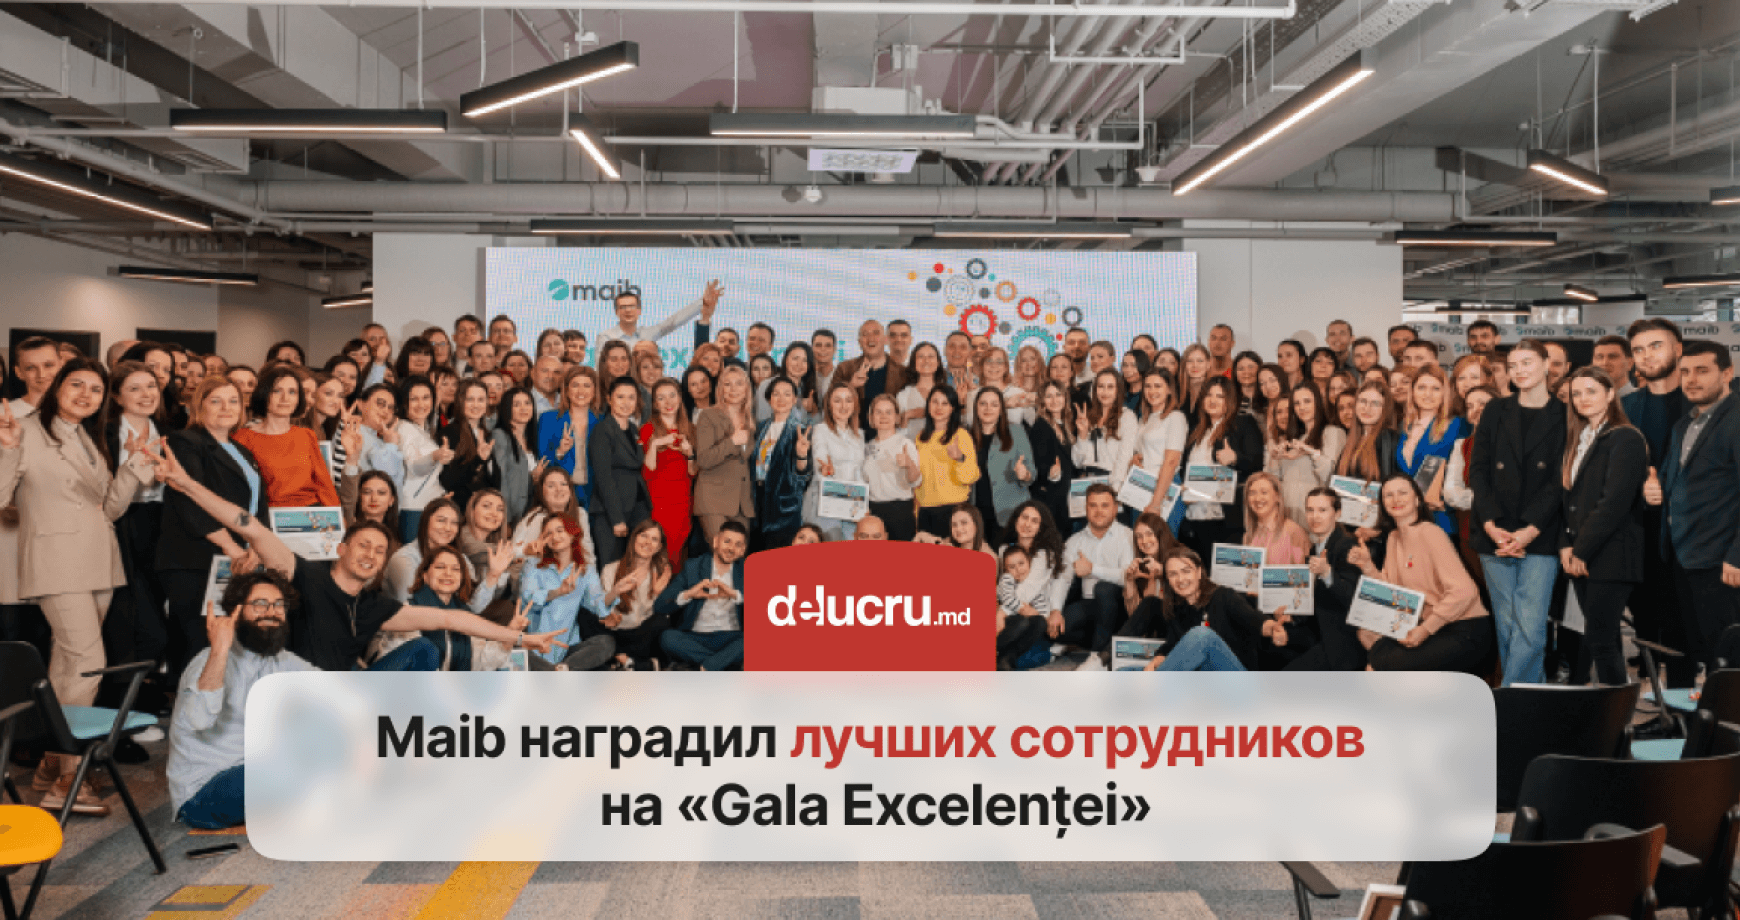 Лучшие сотрудники maib были награждены на традиционном мероприятии «Gala Excelenței»